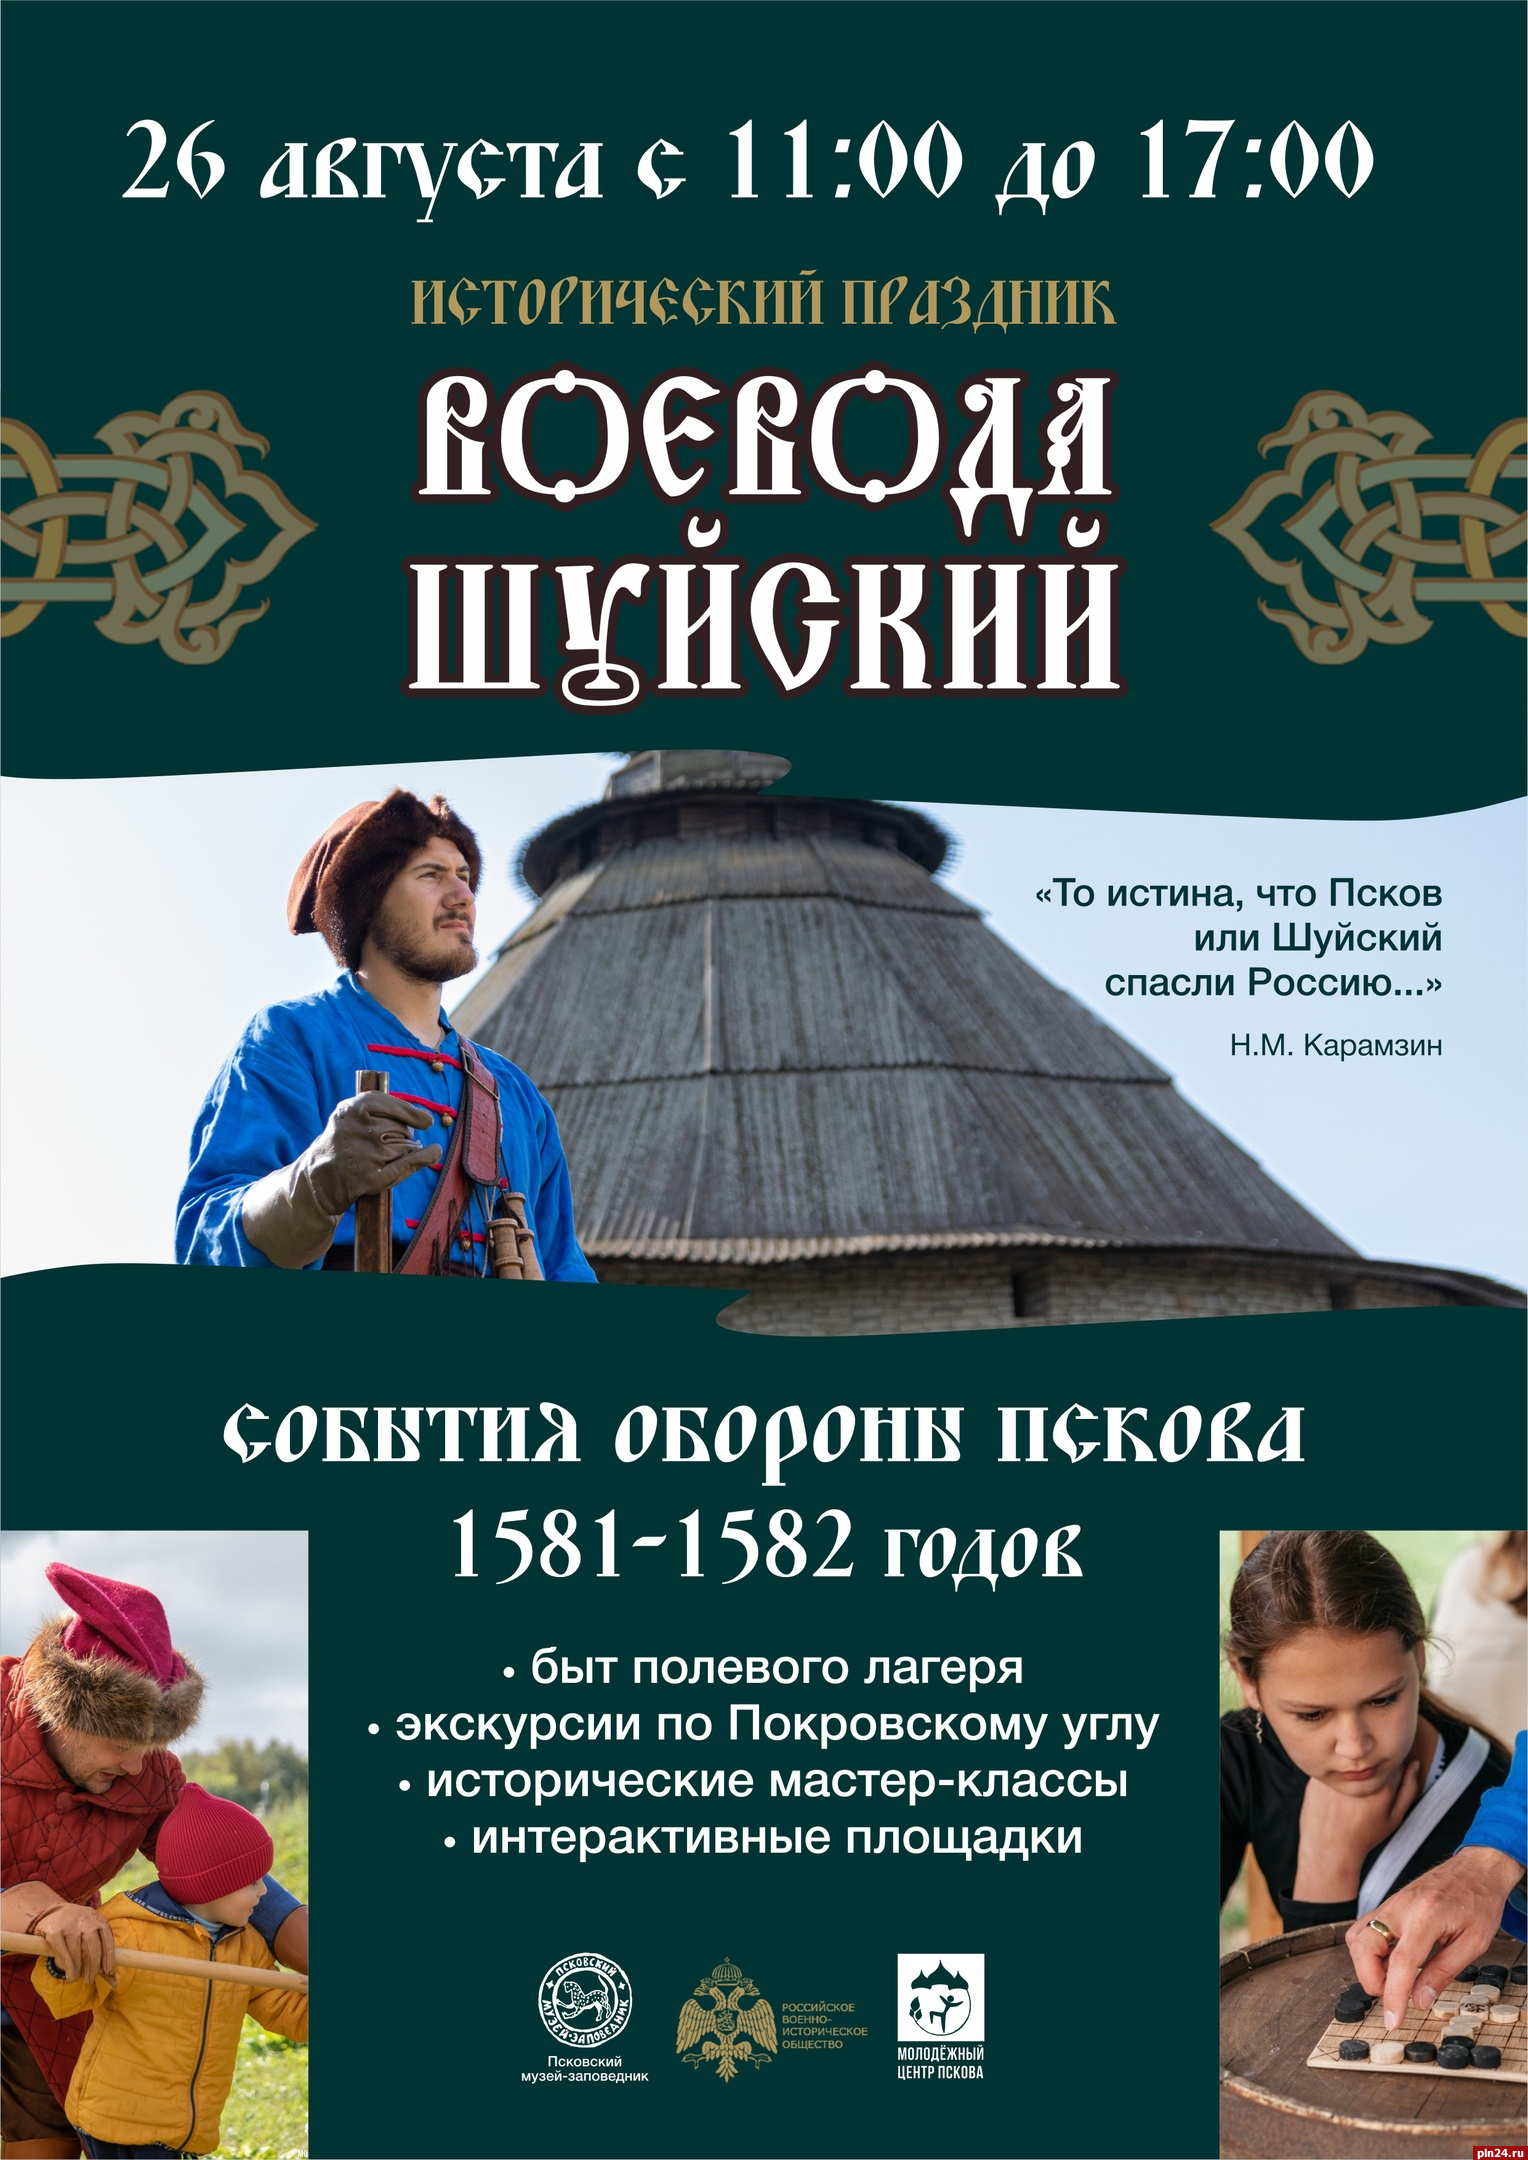 Исторический праздник «Воевода Шуйский» вновь пройдет в Пскове